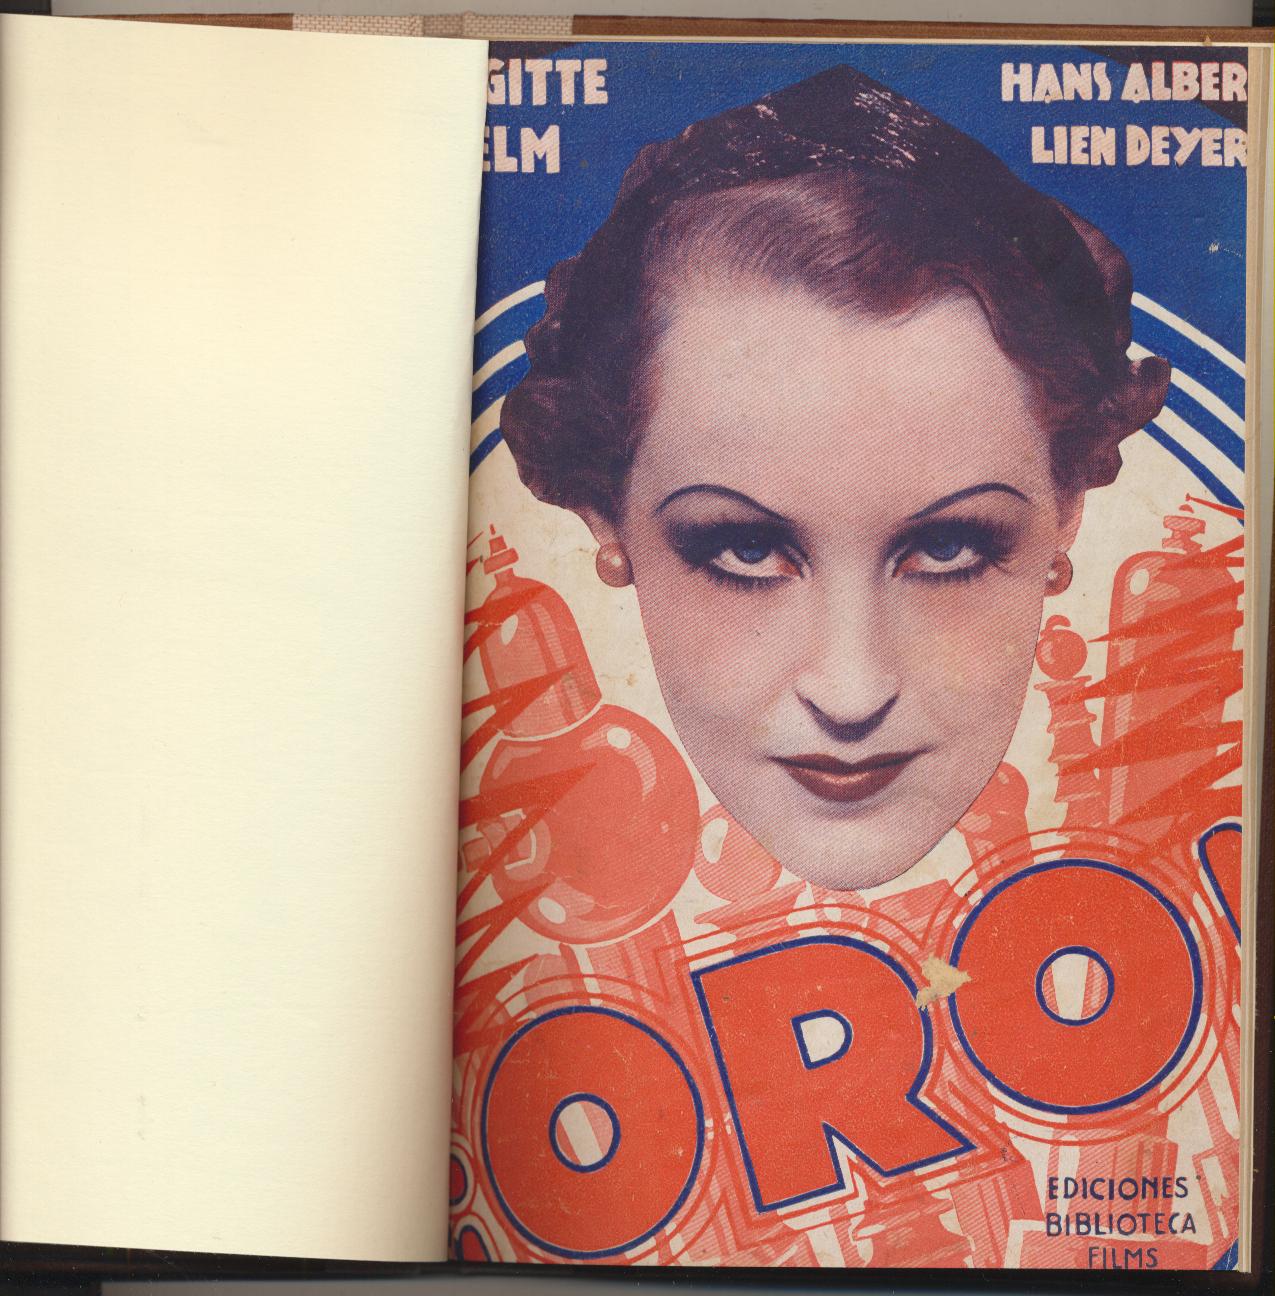 Biblioteca Films nº 155. Oro por Brigite Helm y Hans Albers. Editorial Alas 1934. 67 páginas con fotografías de la película